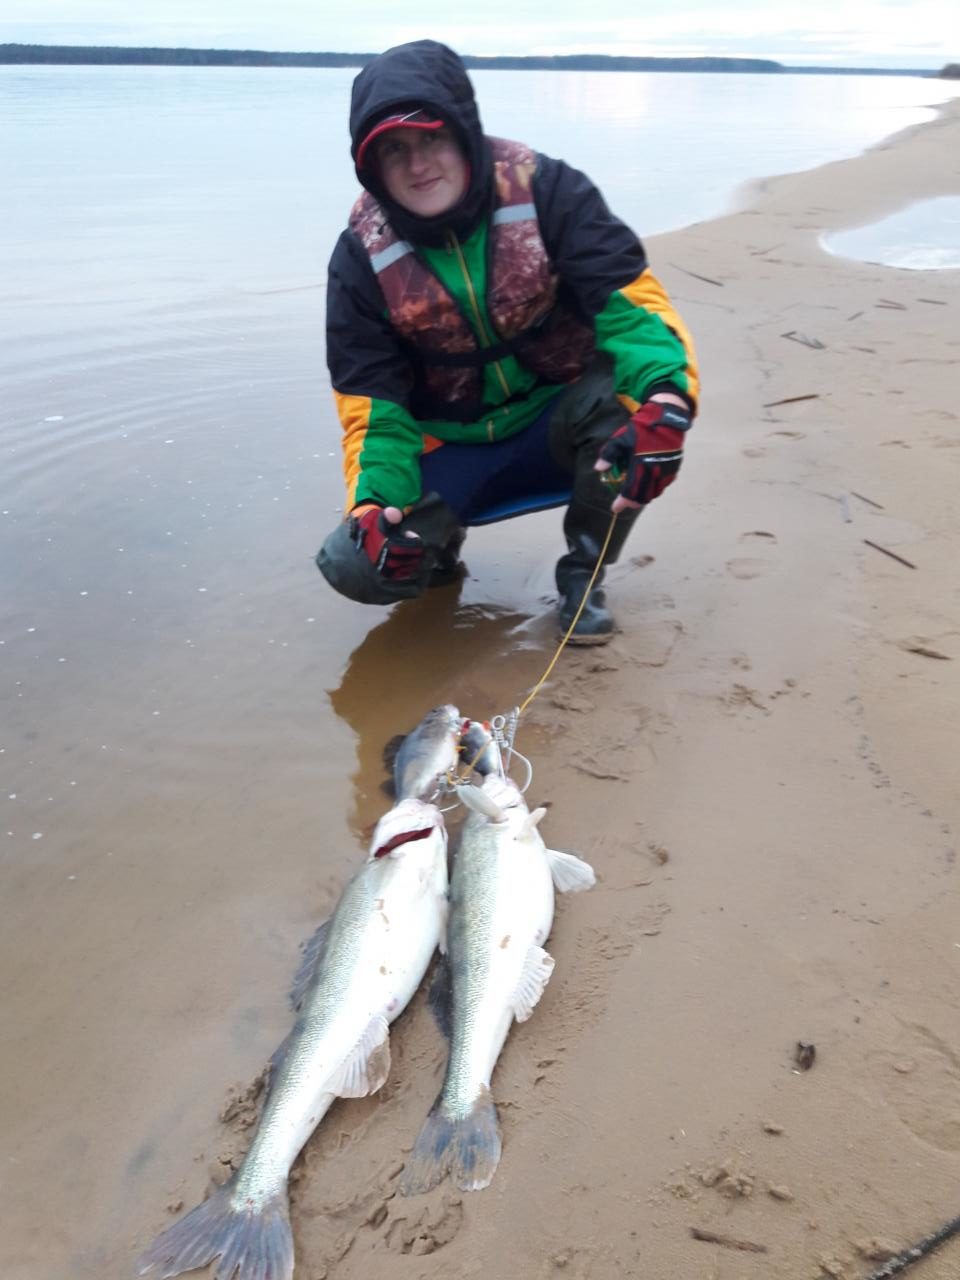  Хотел вырваться на рыбалку.А когда погода позволяет ,то ... | Отчеты о рыбалке в Беларуси